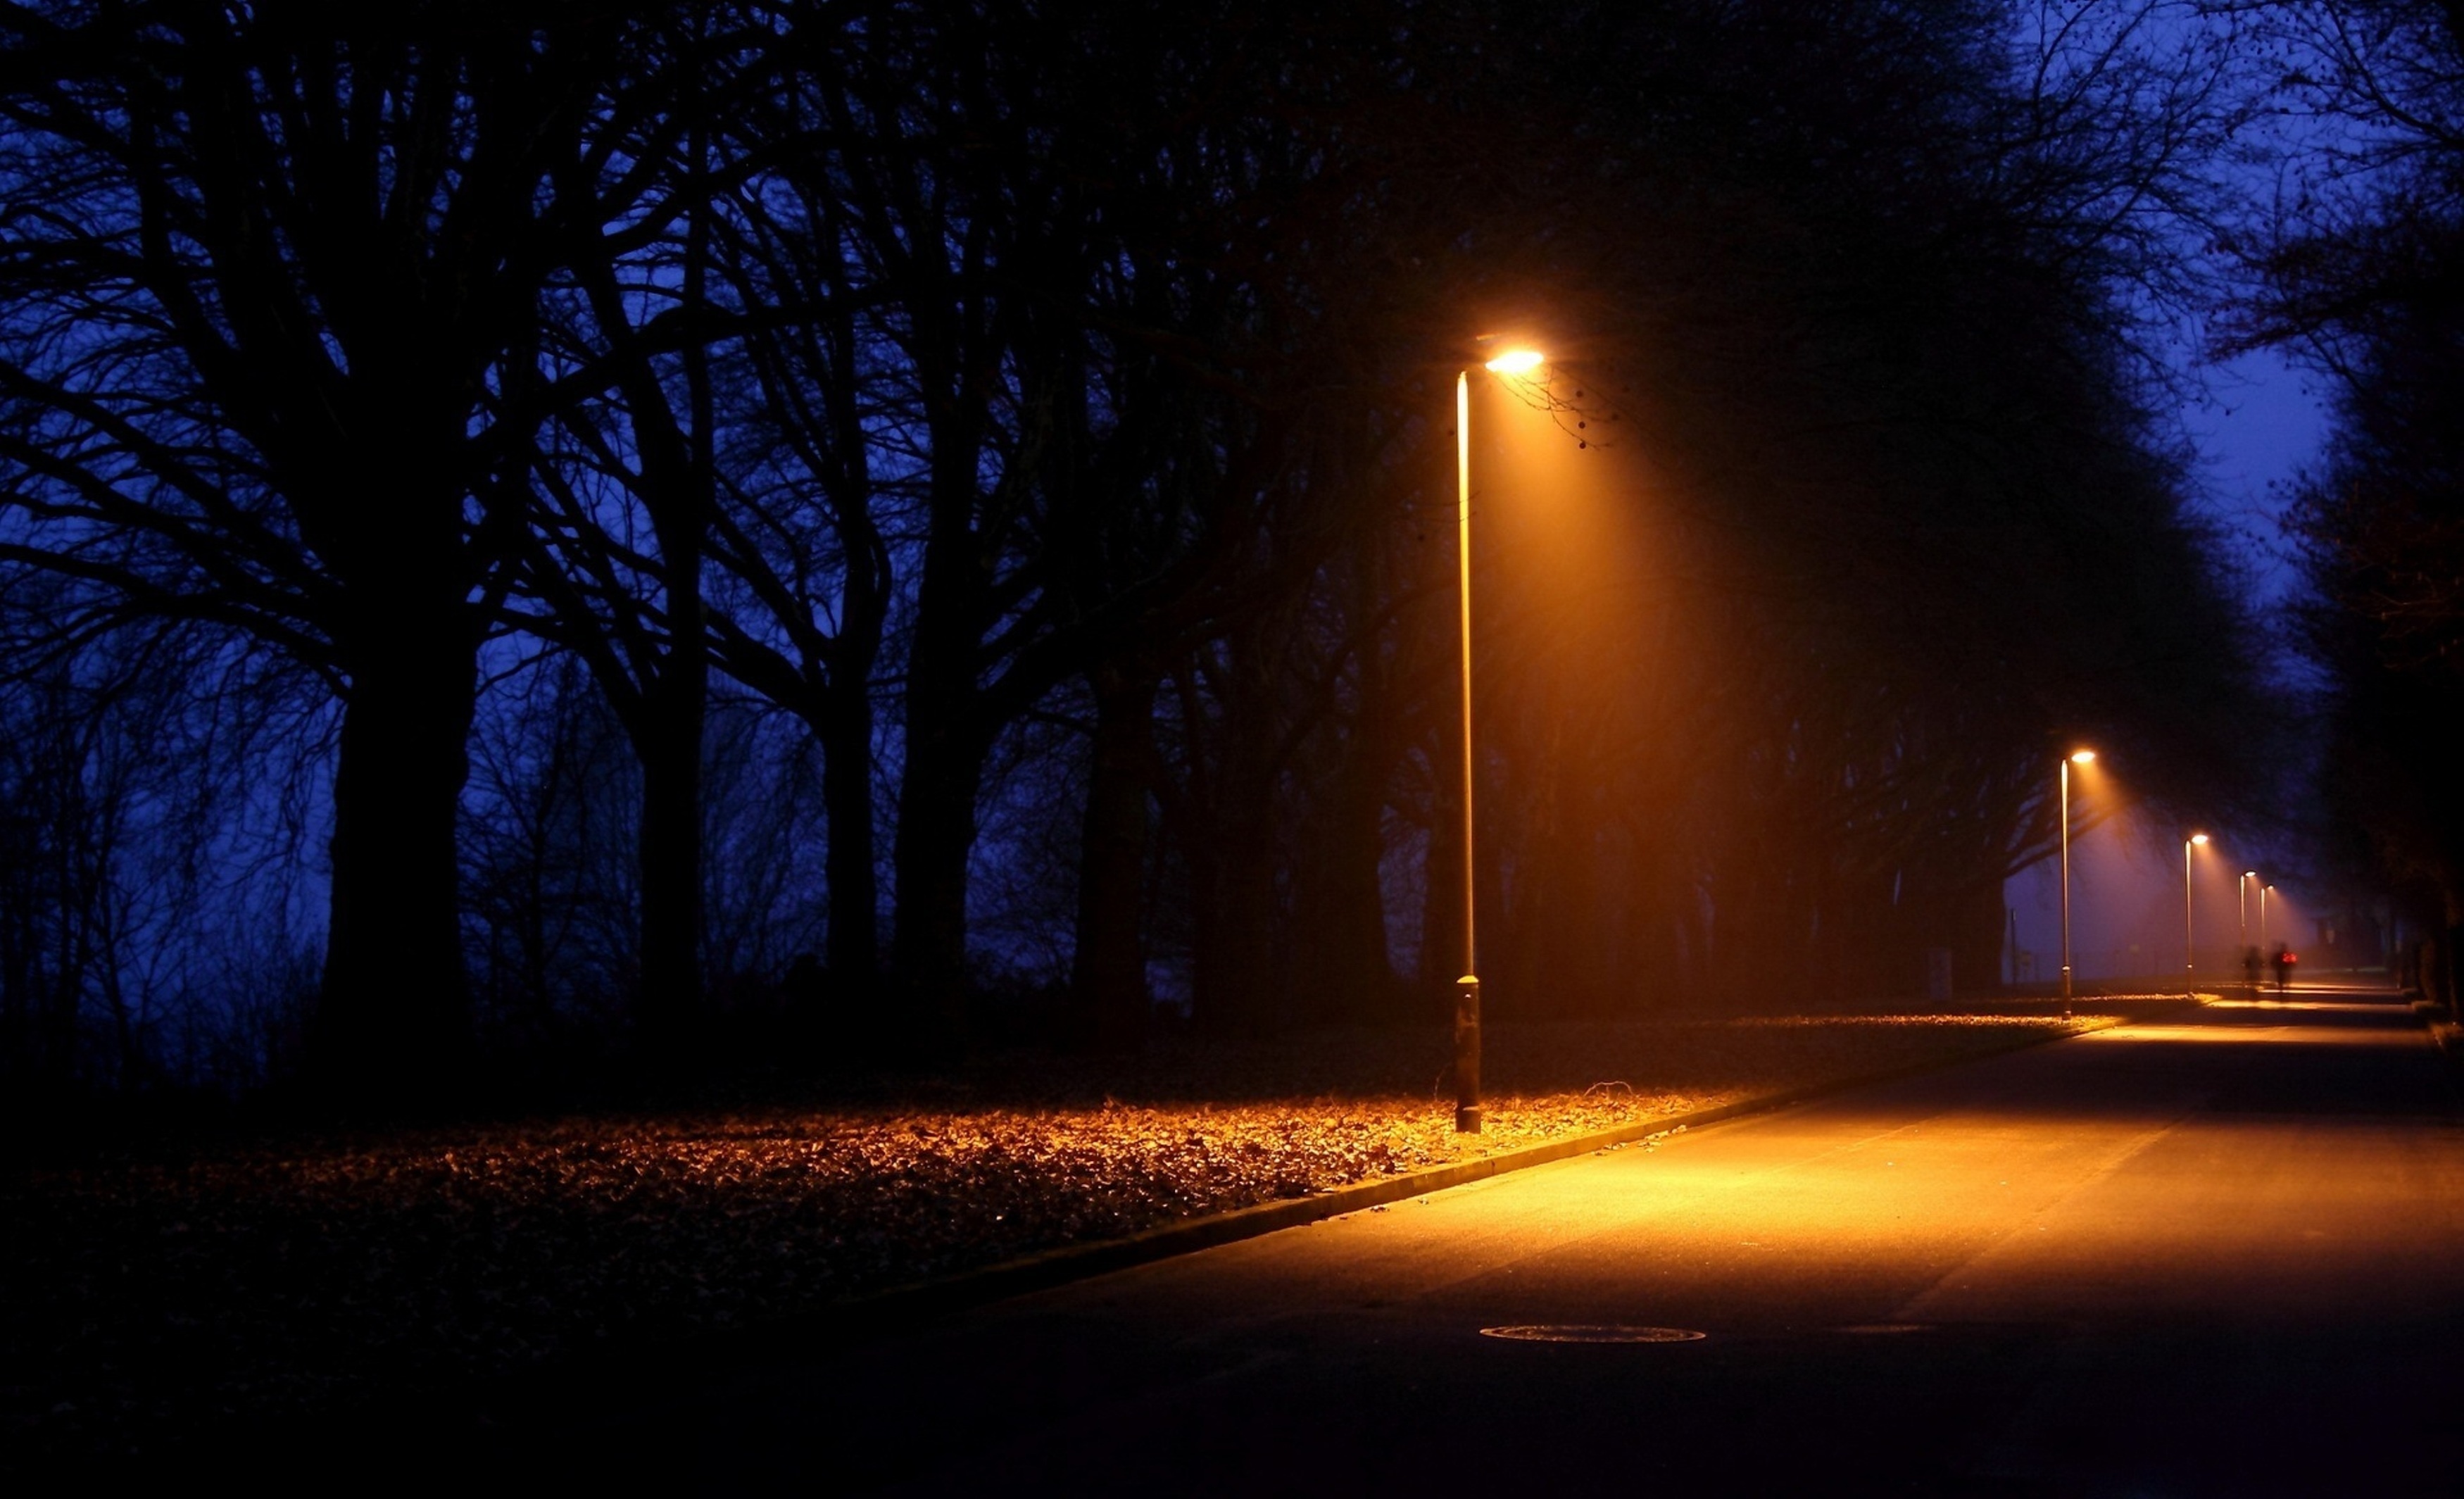 Night posting. Ночная улица с фонарями. Фонарь ночью. Уличный фонарь ночью. Ночной парк с фонарями.